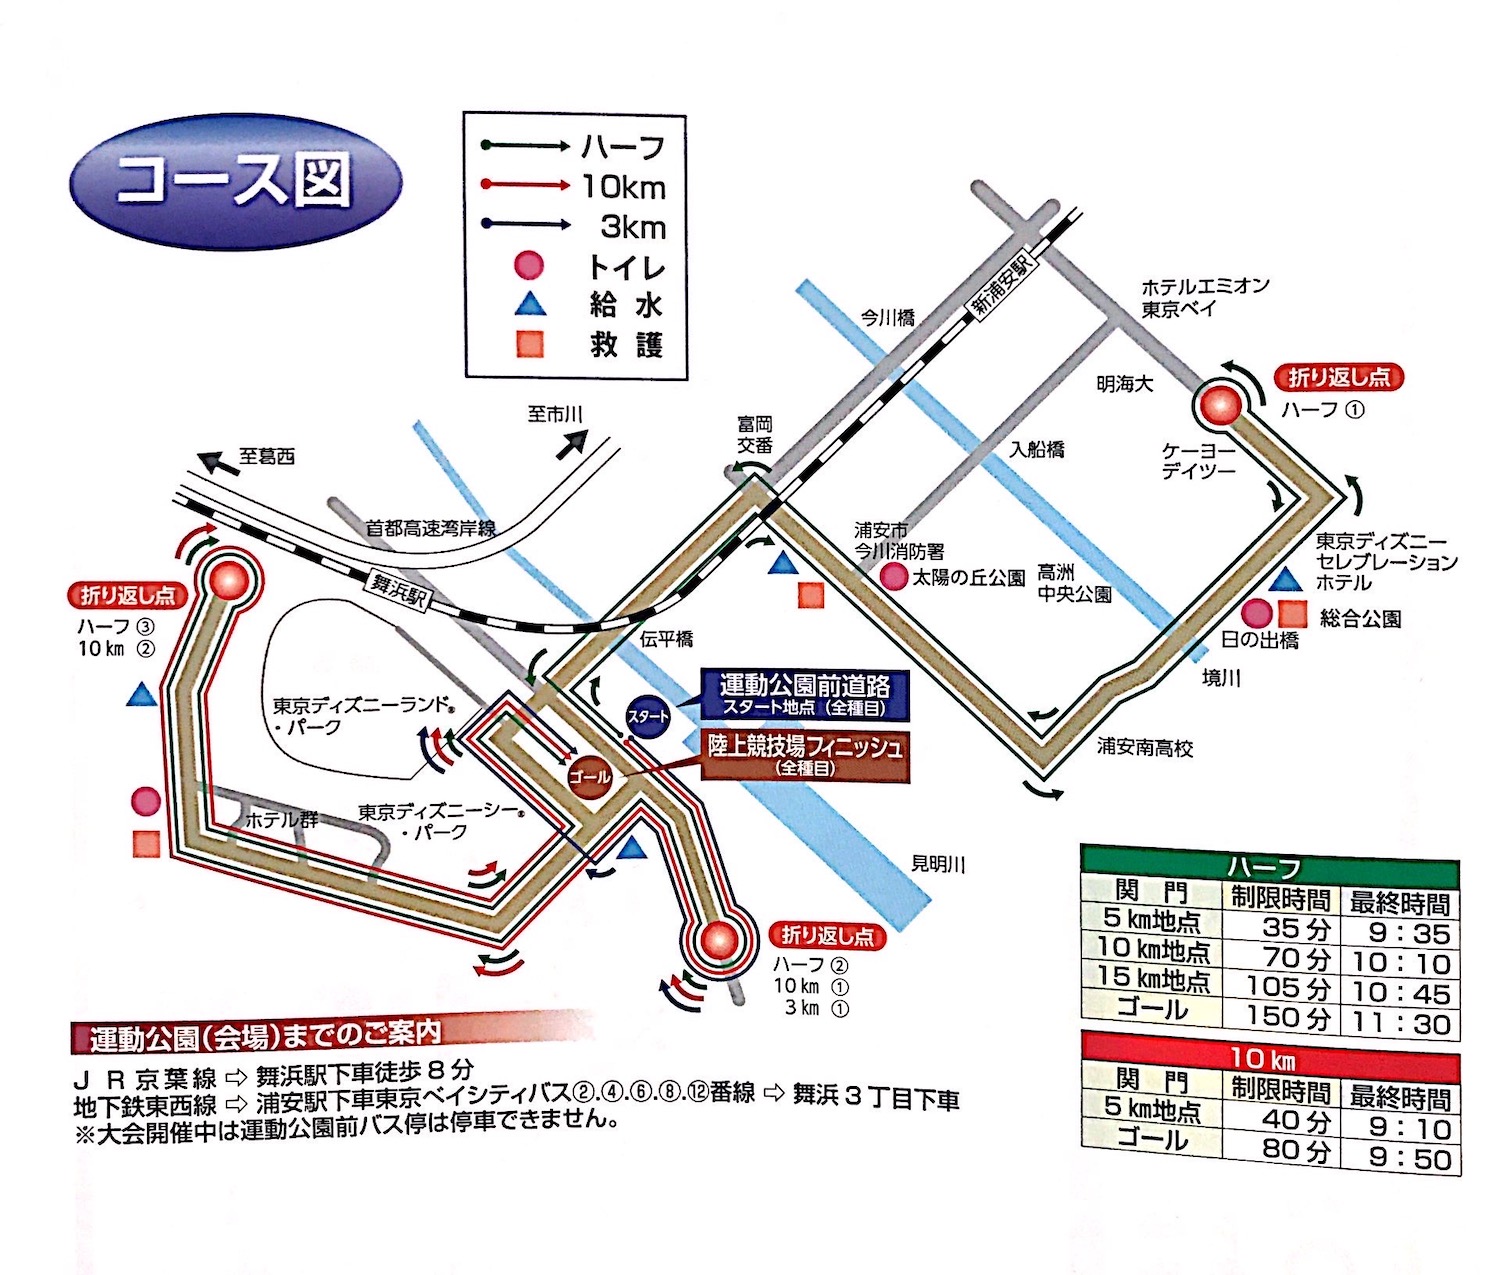 東京ベイ浦安シティマラソン コース図